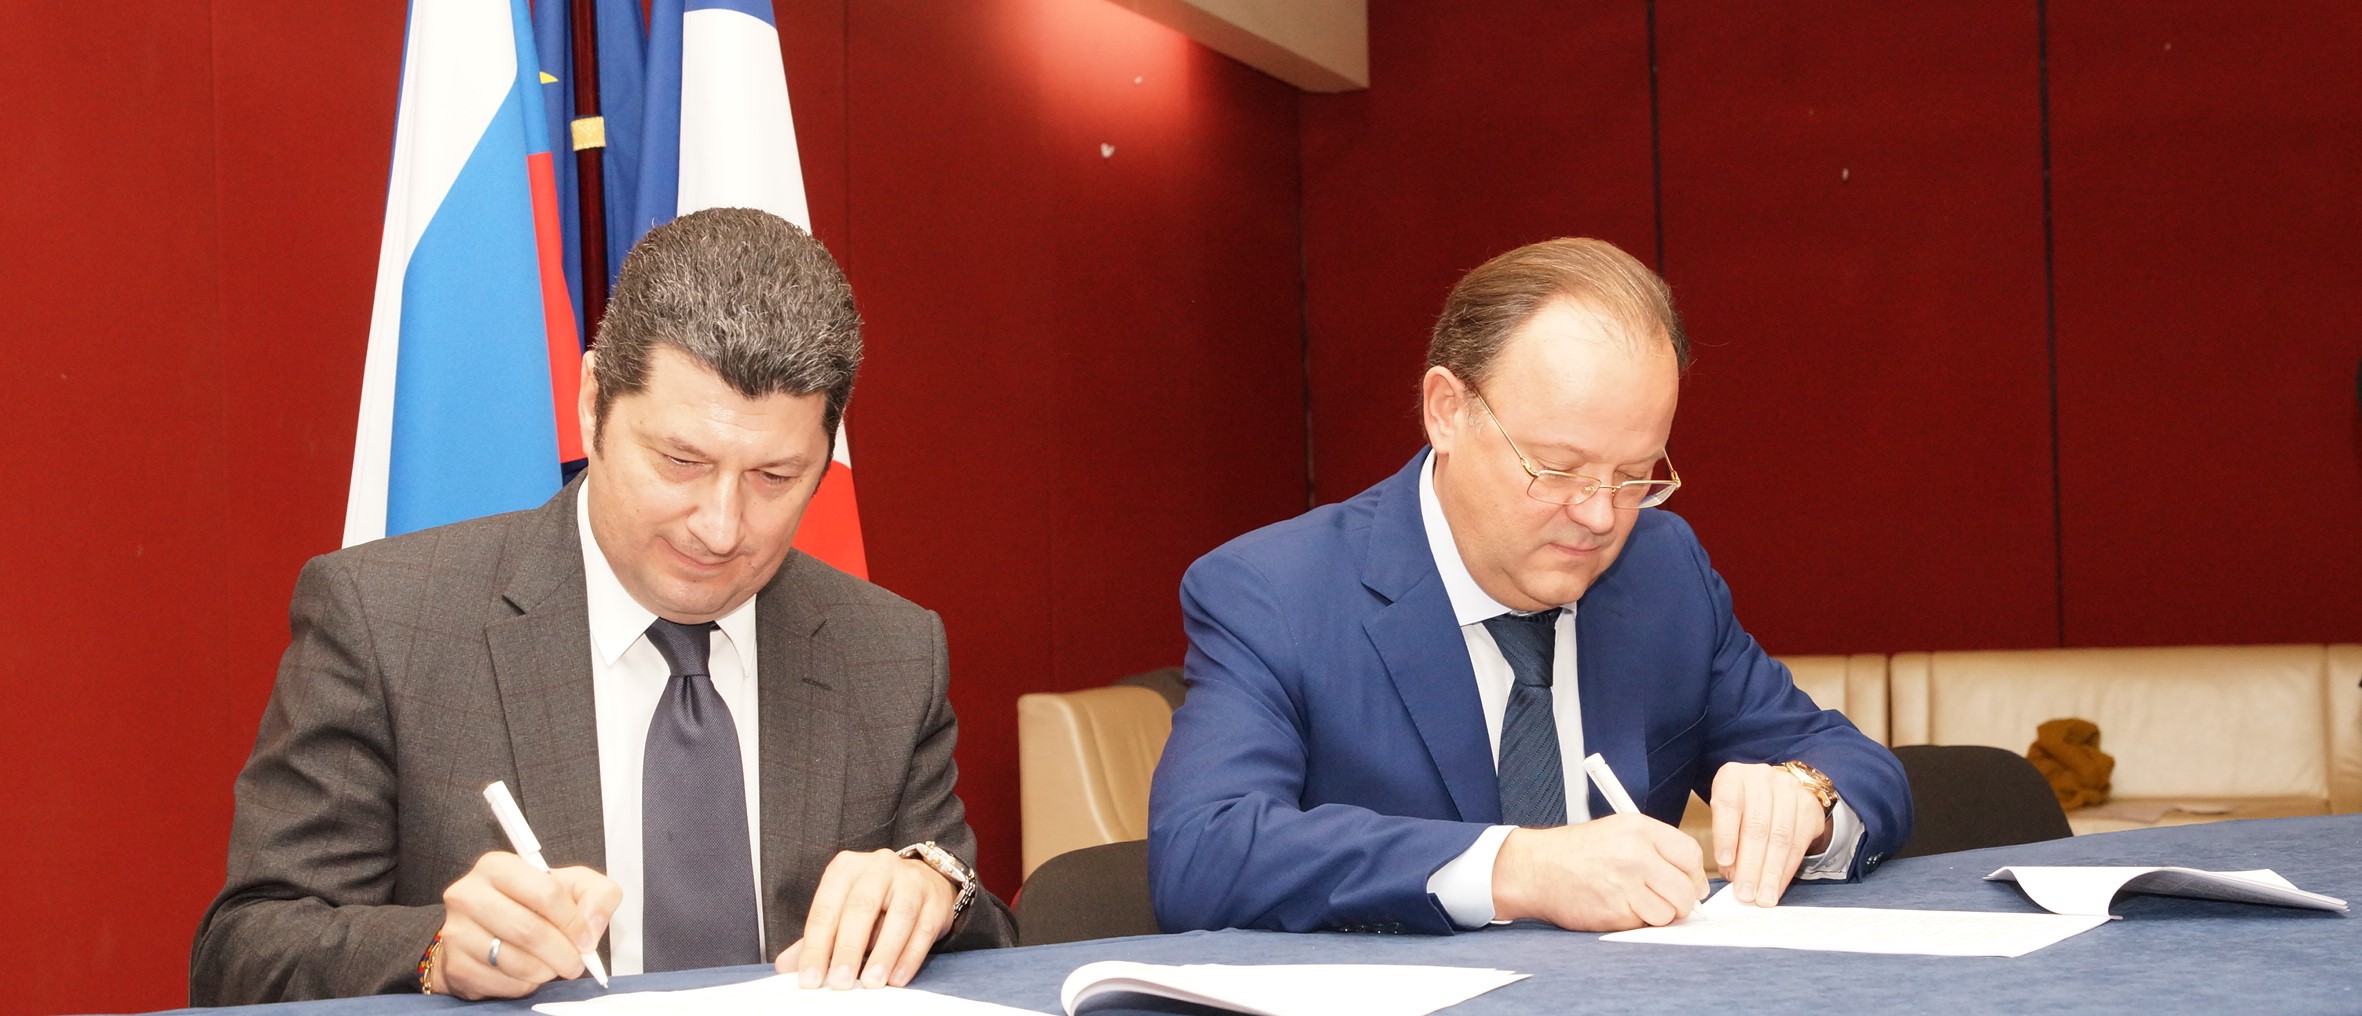 Spirit France и «Ладога» подписали дистрибьюторское соглашение